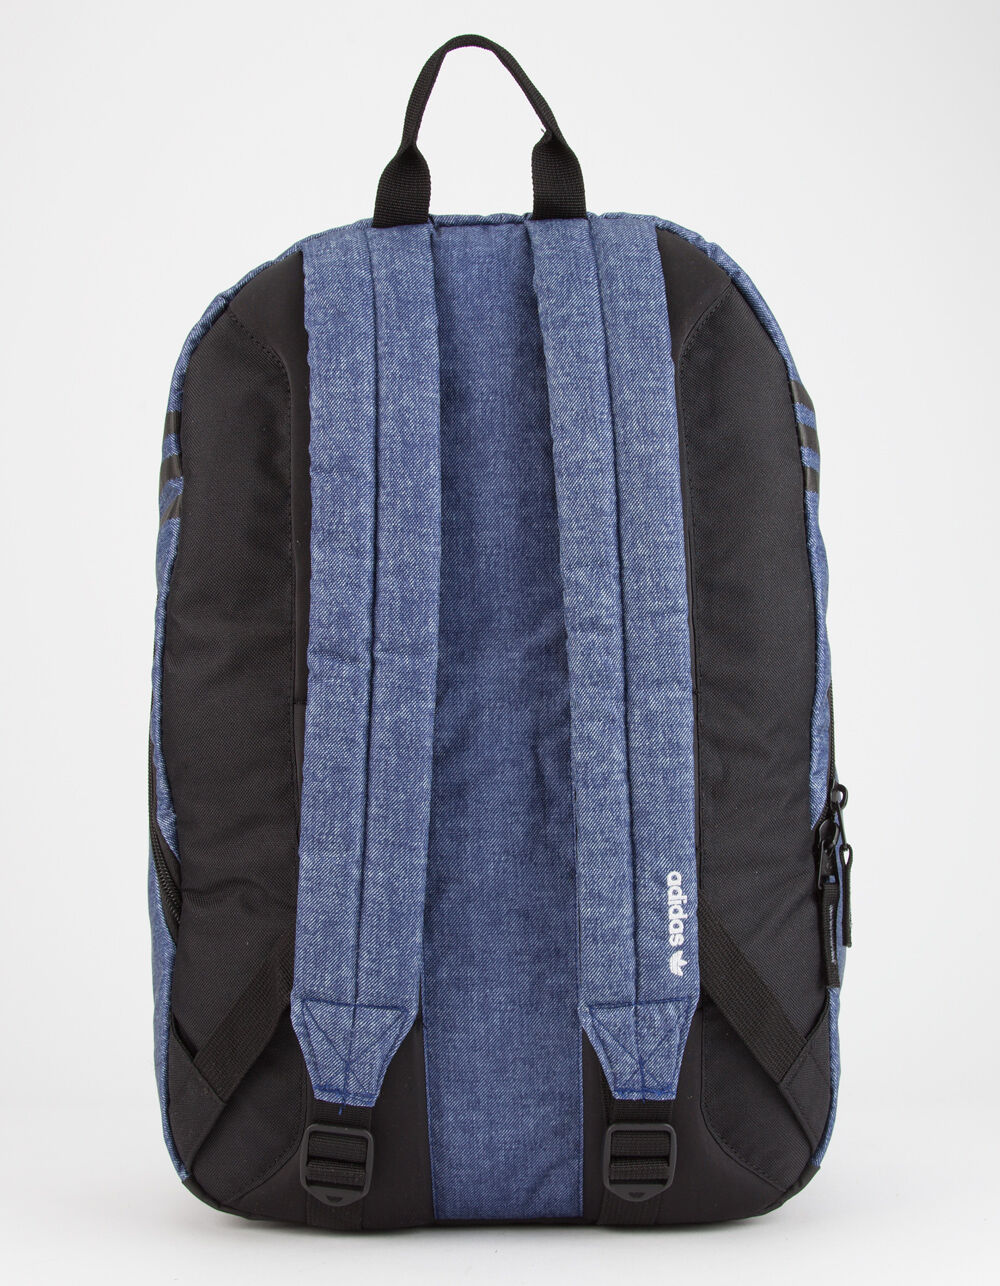 ADIDAS Originals National Blue Denim Backpack image number 3